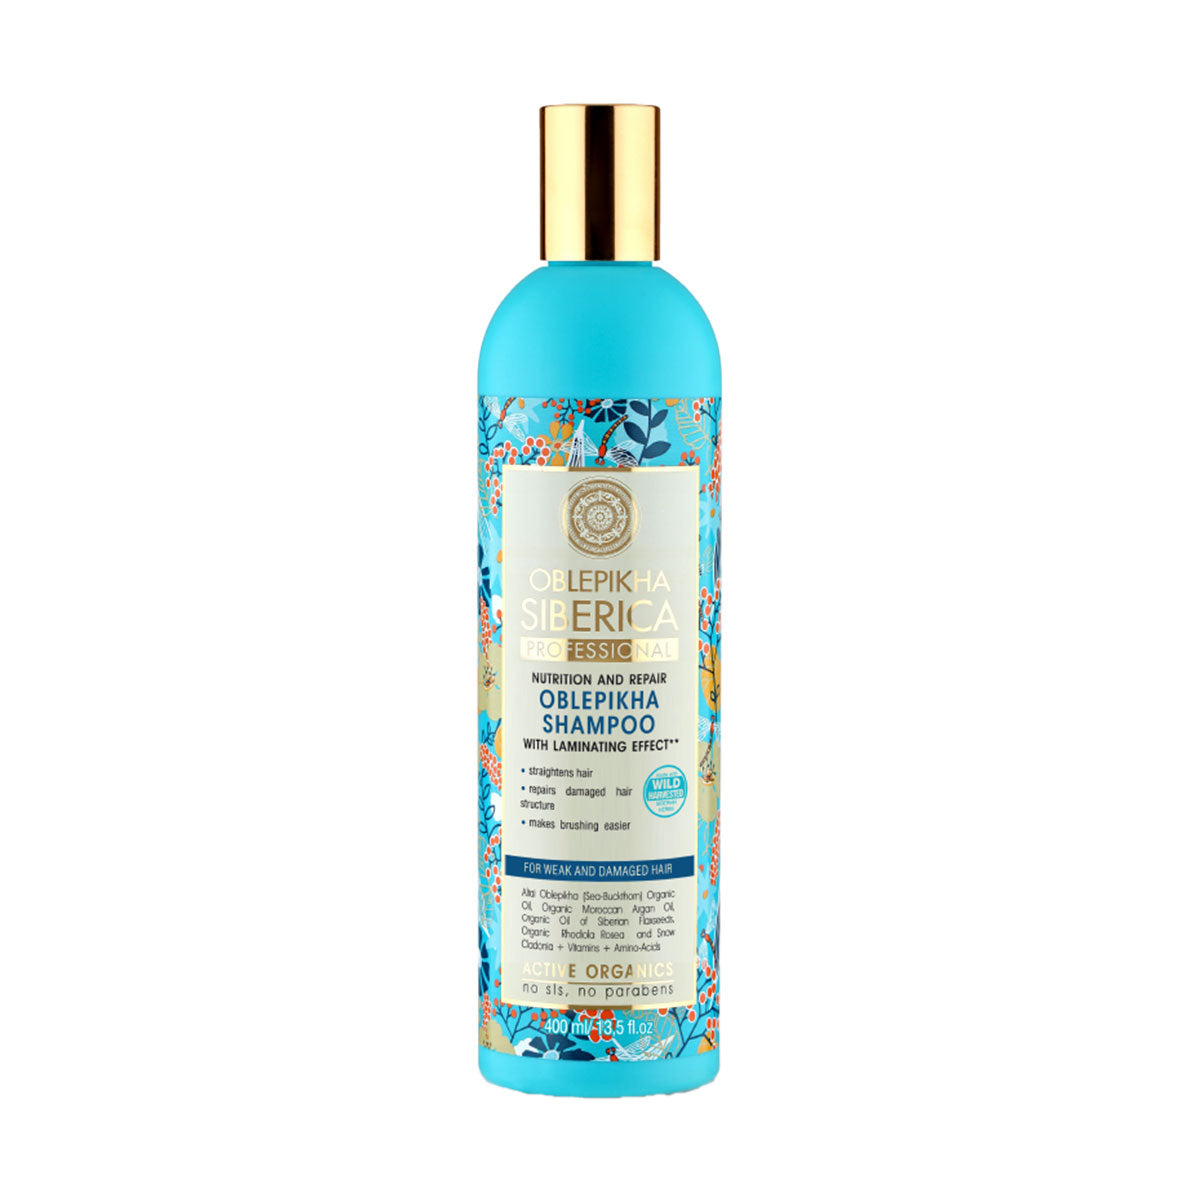 Shampoo para cabello Débil y Dañado Espino Amarillo Oblepikha Natura Siberica 400 ml 🍃 Producto Ecológico